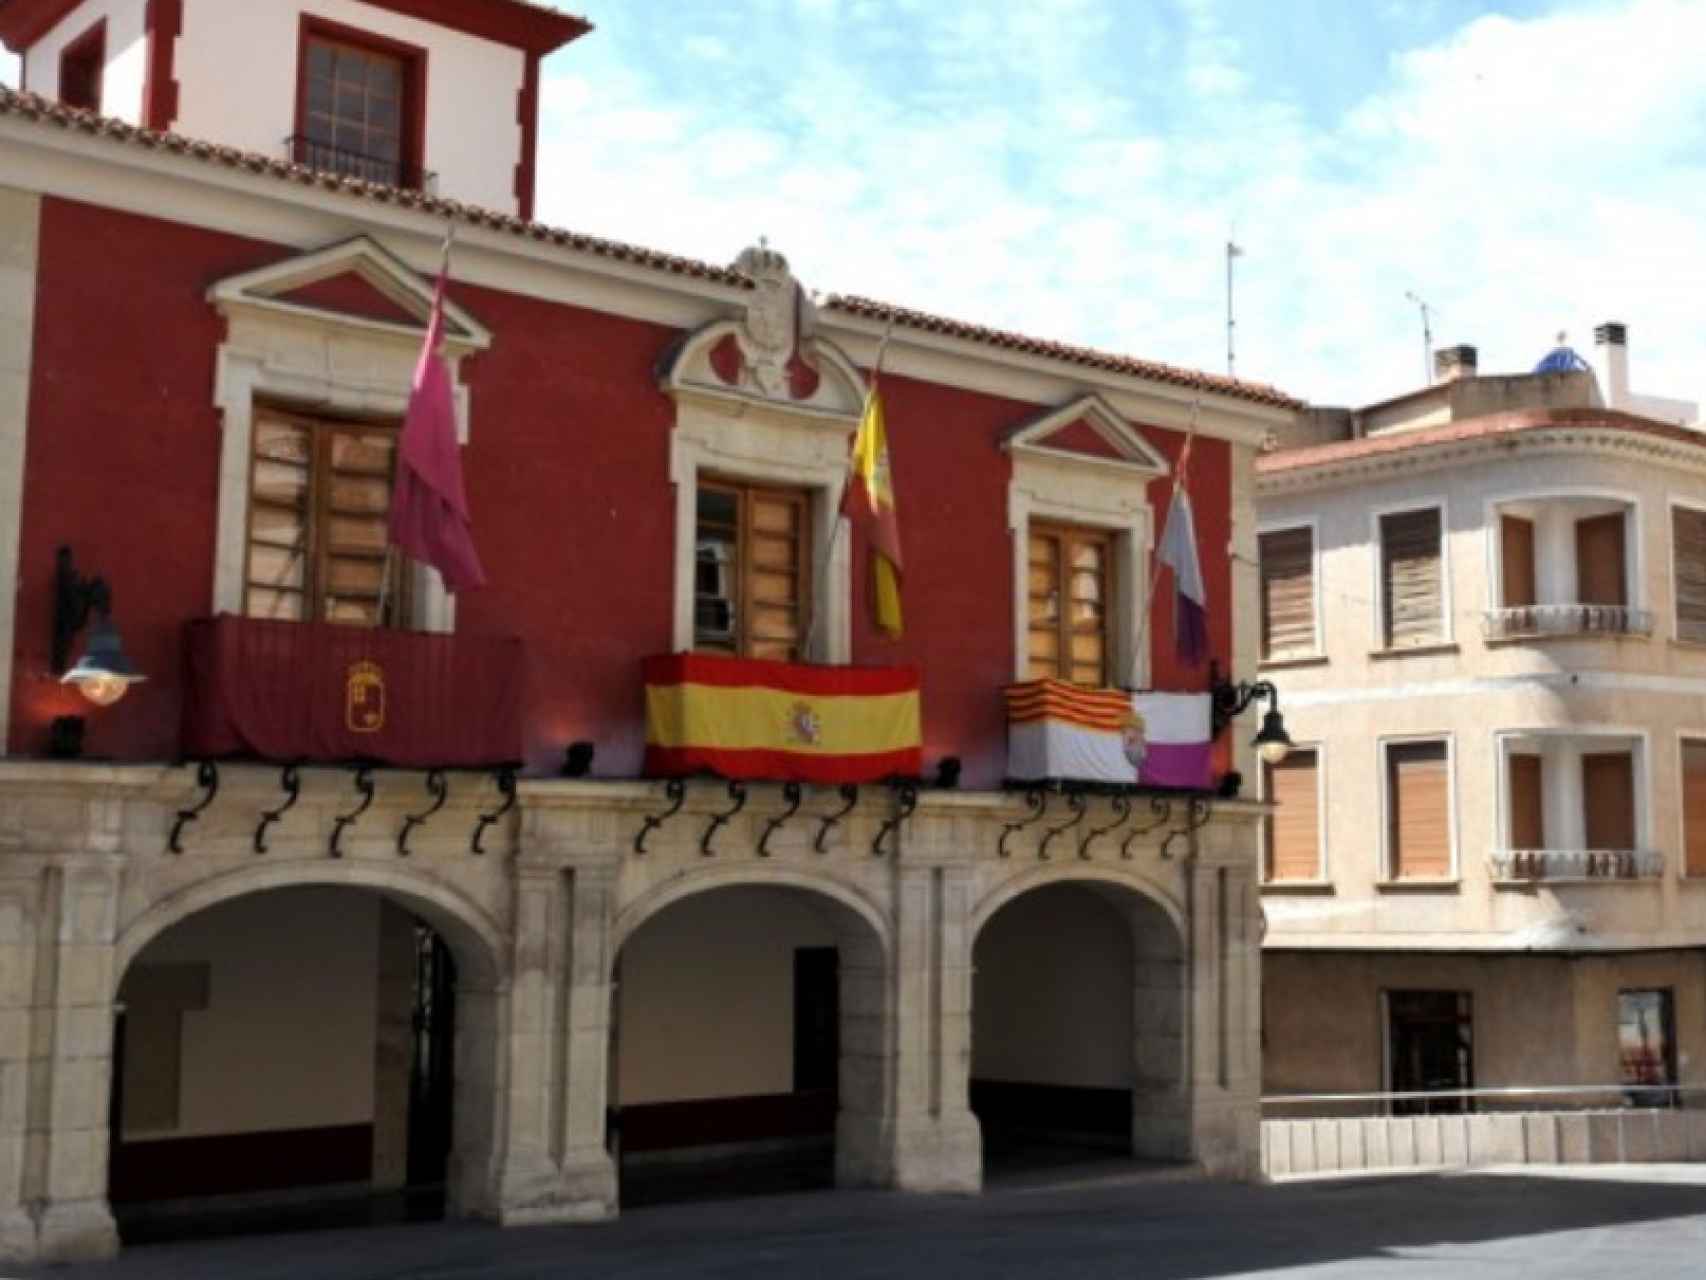 La fachada del Ayuntamiento de Abanilla donde Pedro Sánchez ha trabajado como auxiliar administrativo.